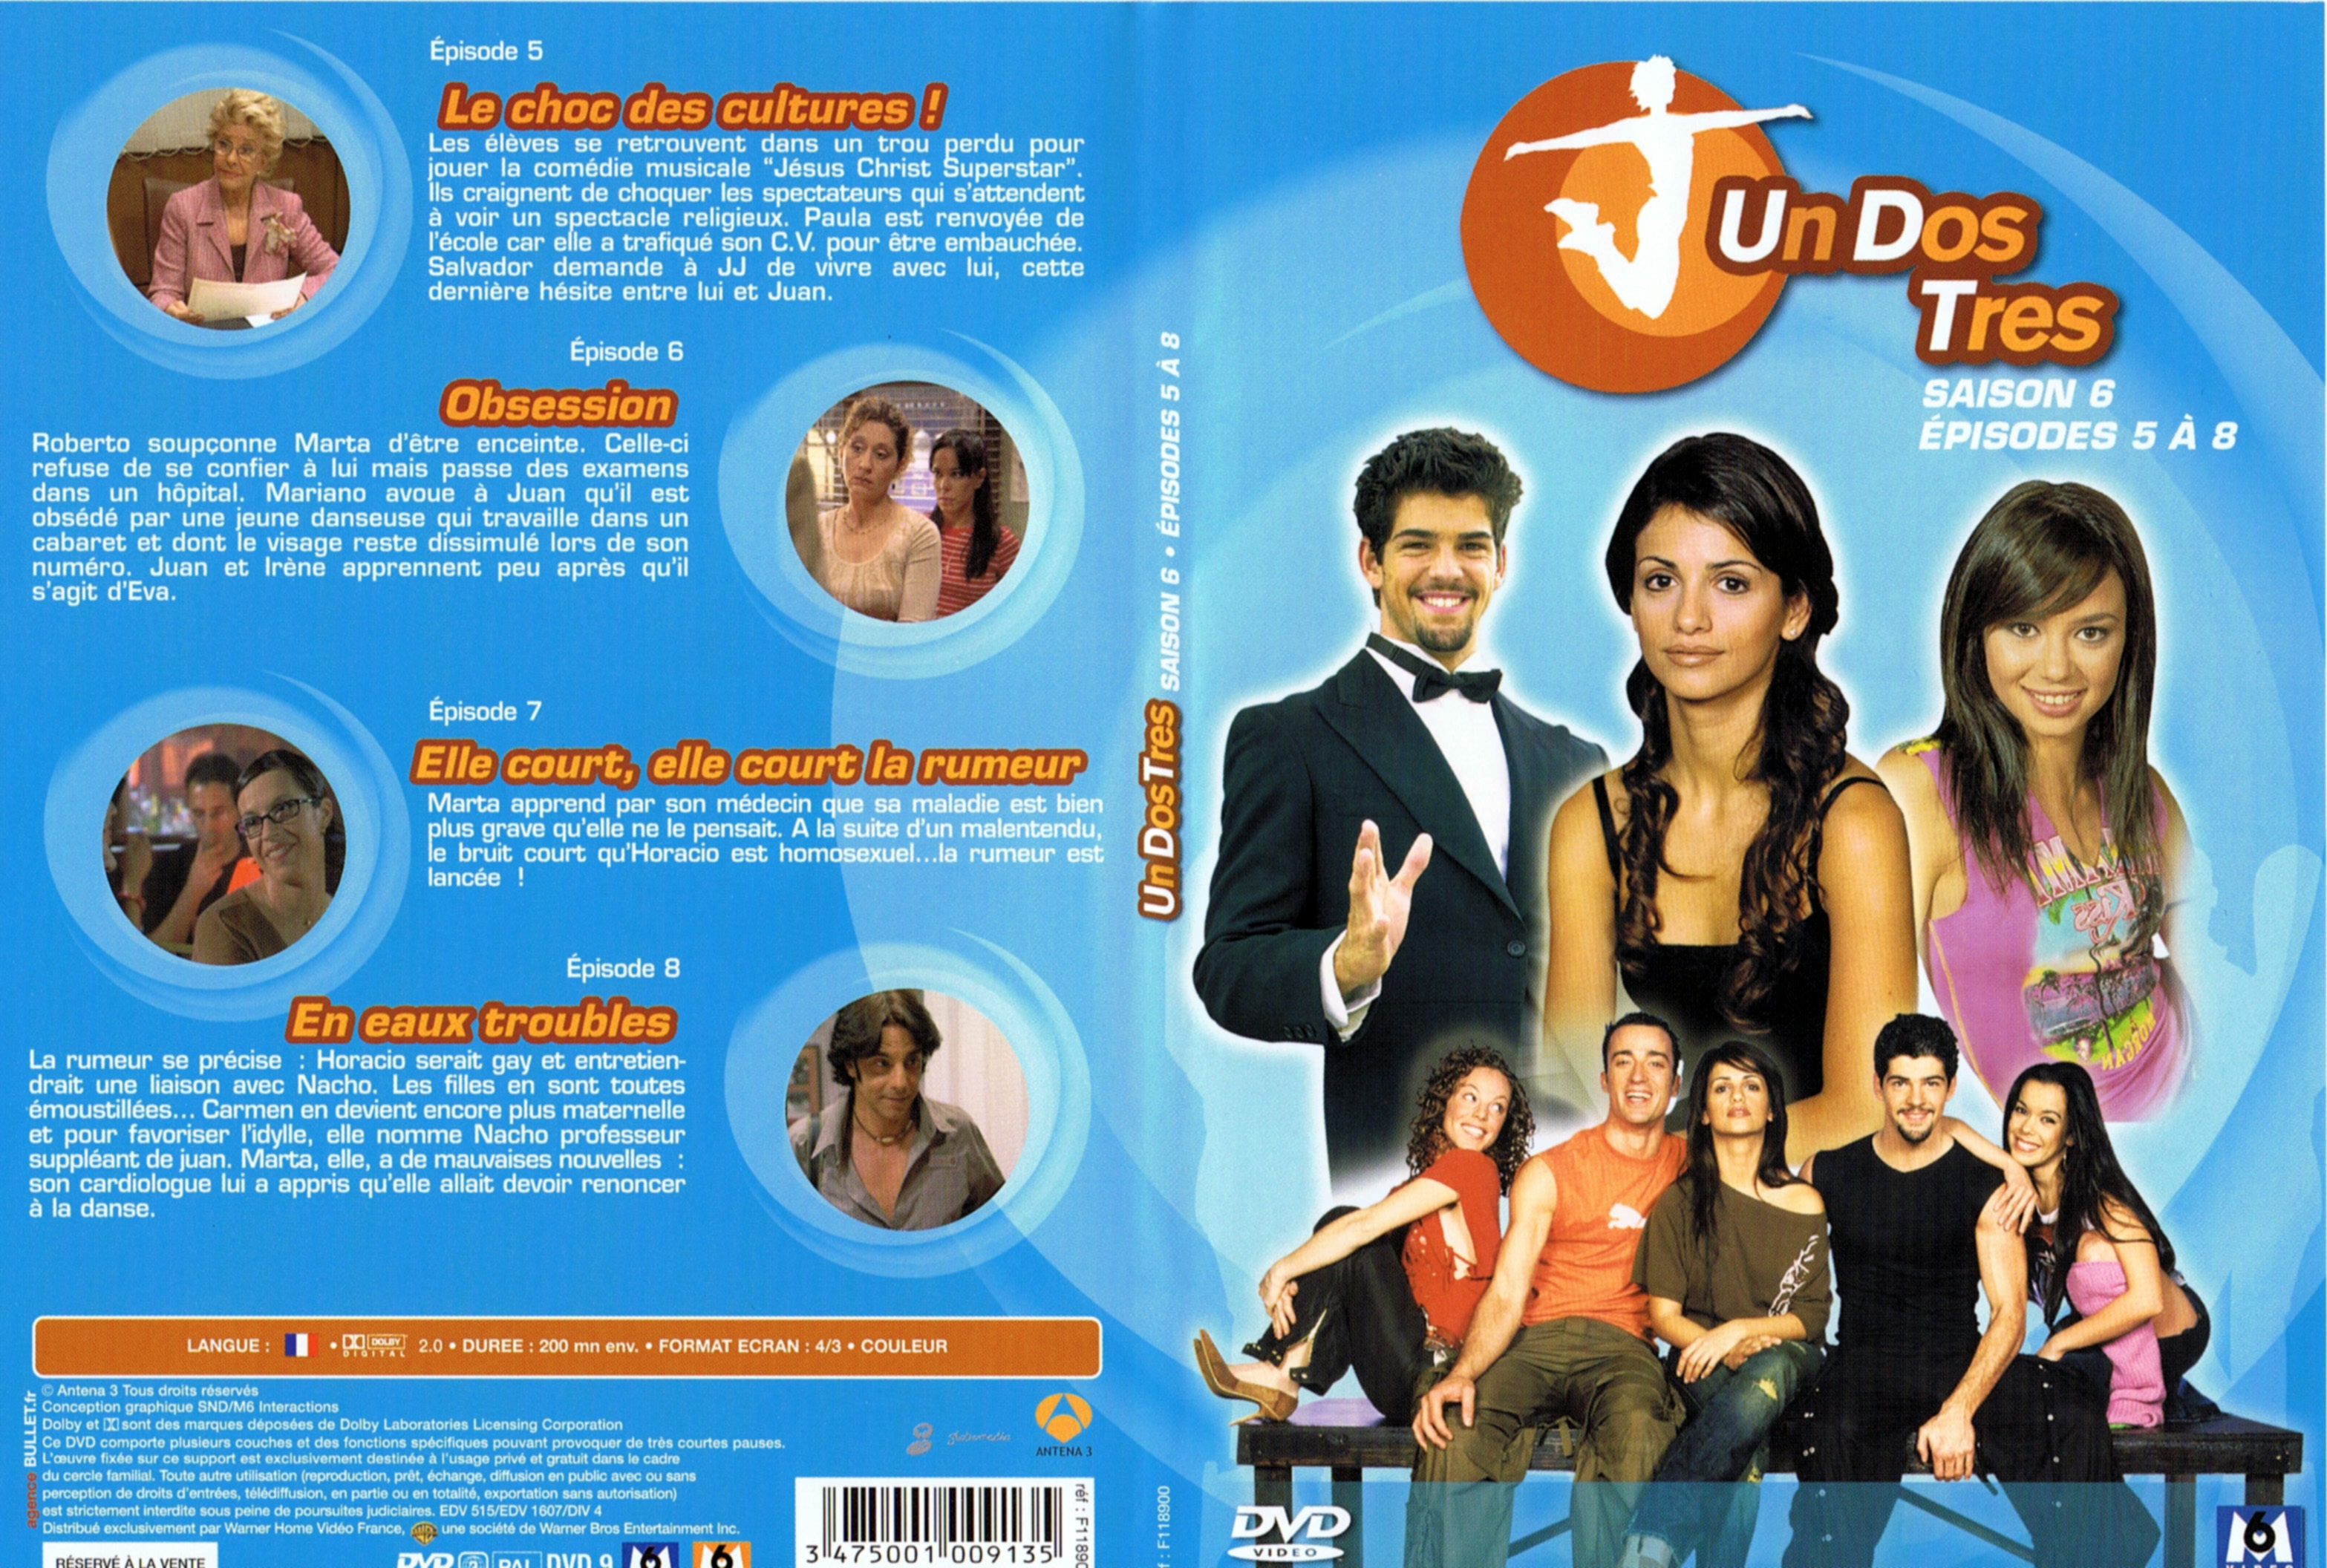 Jaquette DVD Un dos tres Saison 6 DVD 2